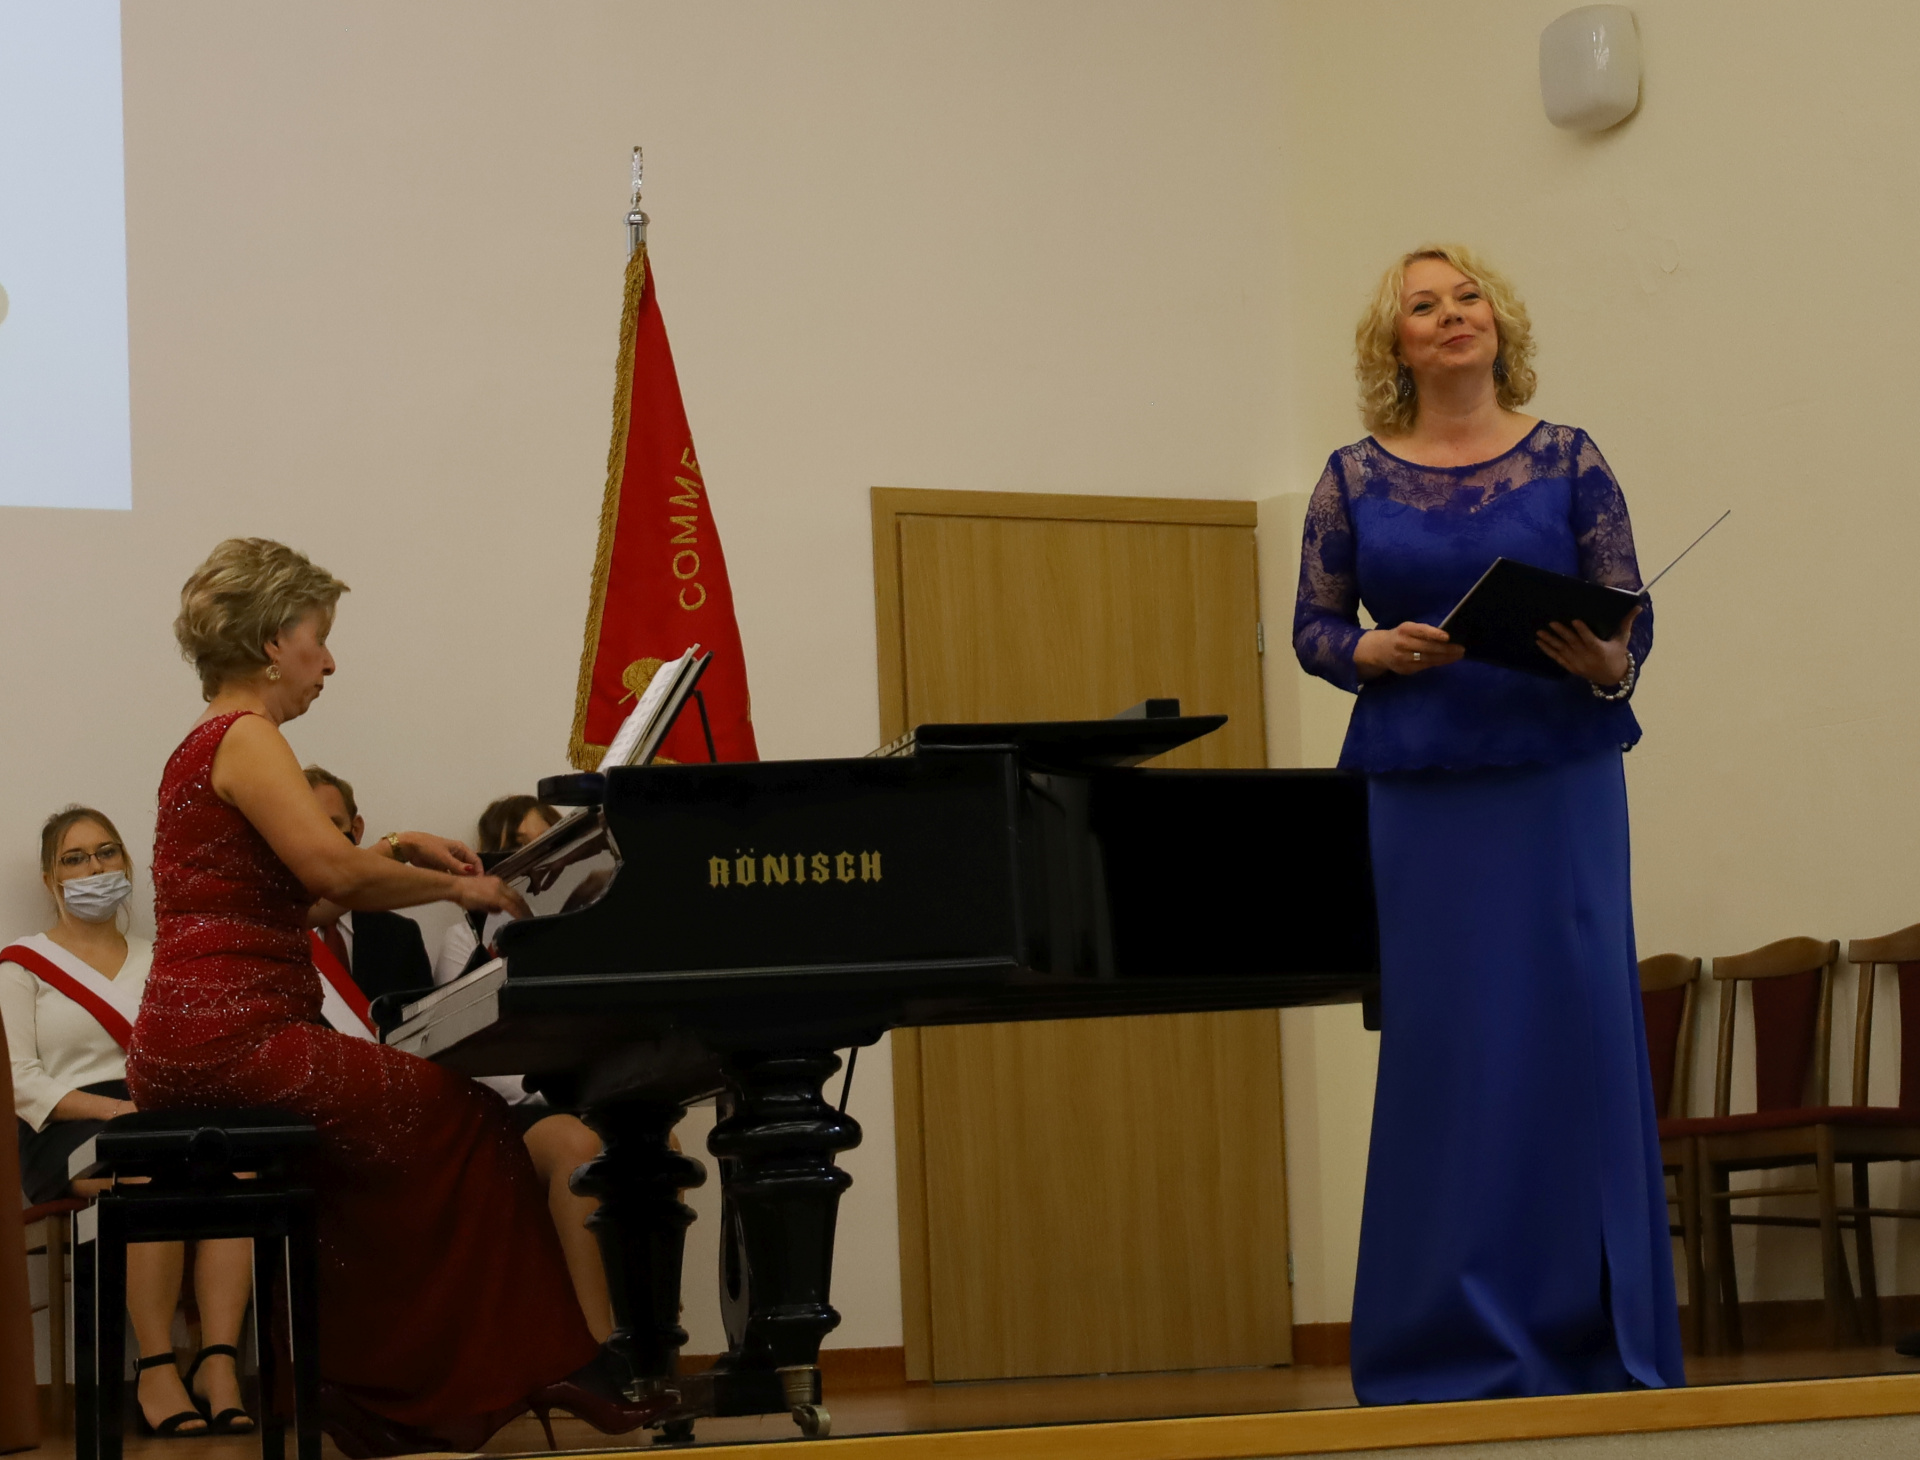 Panie w sukniach (pracownice Filii: mgr Magdalena Chudziczek – Cieślar (sopran) i dr Anastazja Wilczkowska (fortepian) podczas występu artystycznego, który uświetnił uroczystość.